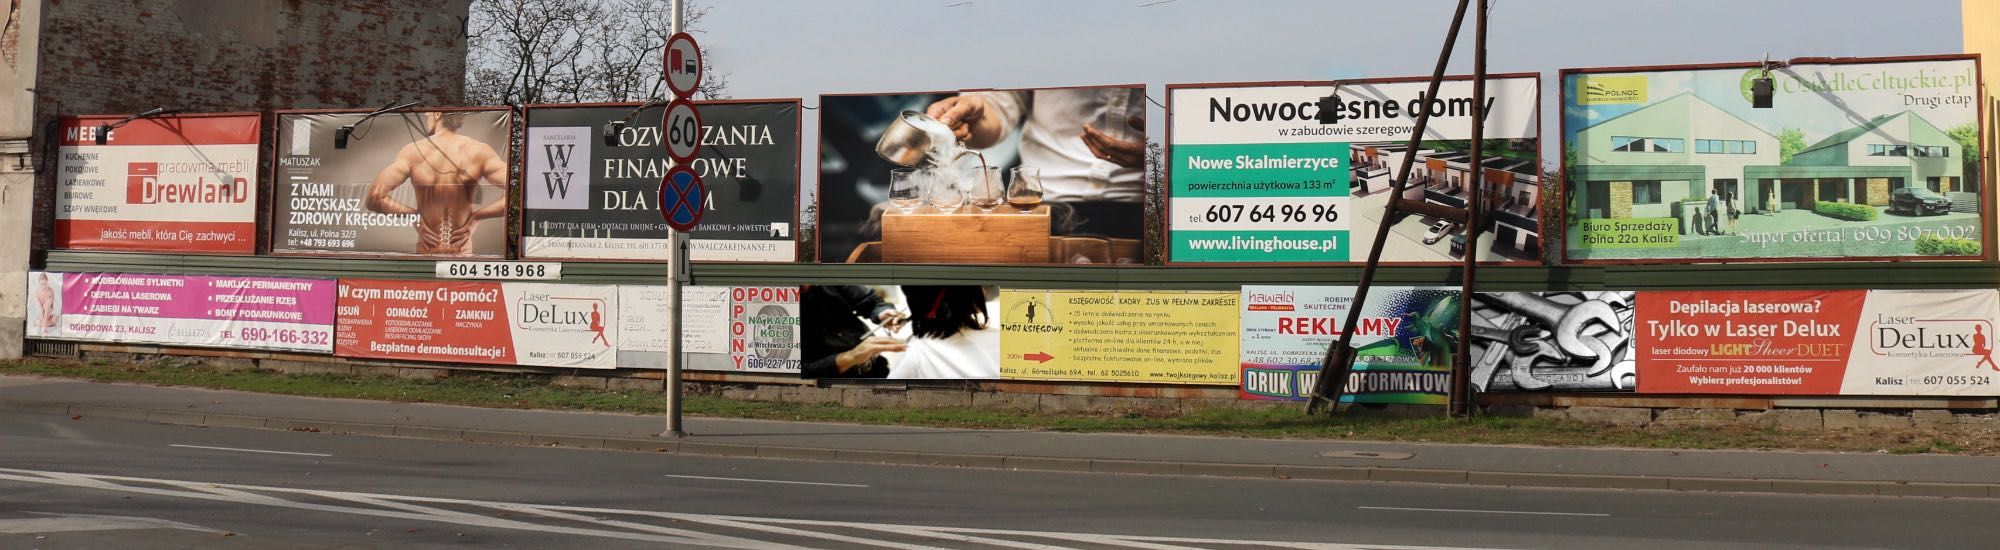 Baner, billboard, powierzchnia reklamowa Wrocławska/Podmiejska Kalisz